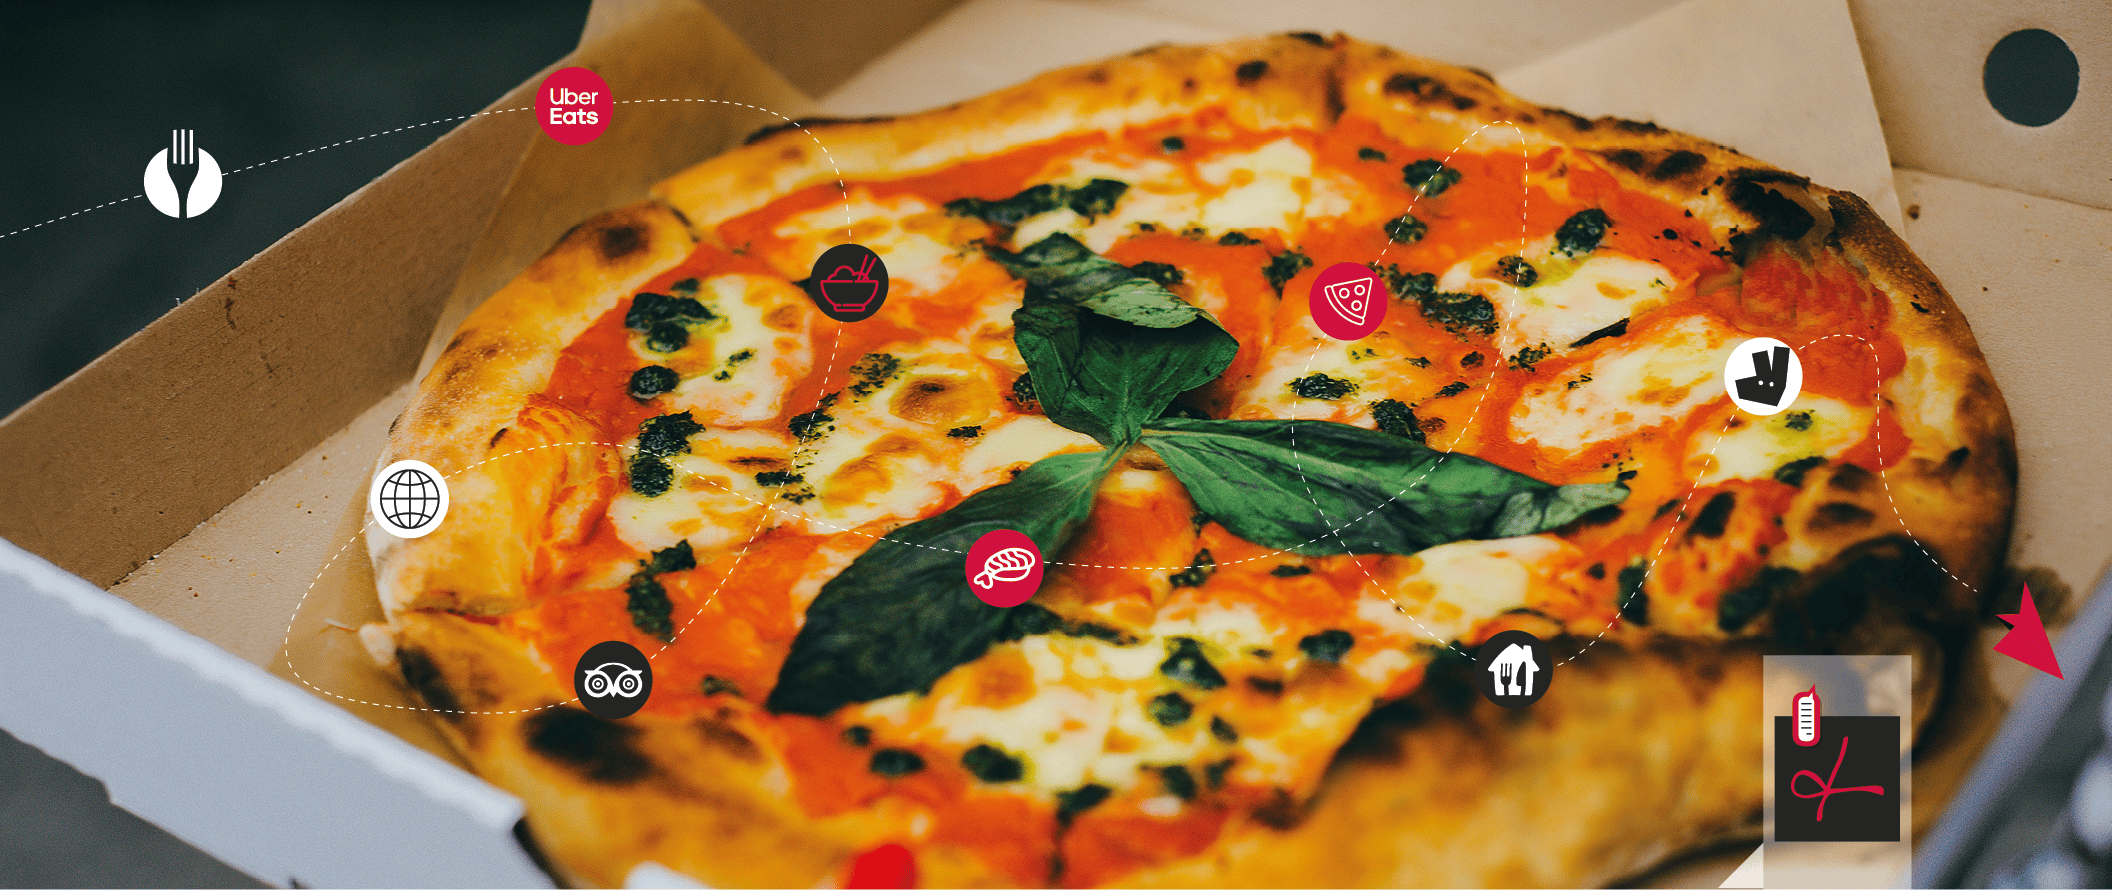 Blog-Absolut-News-Pizza